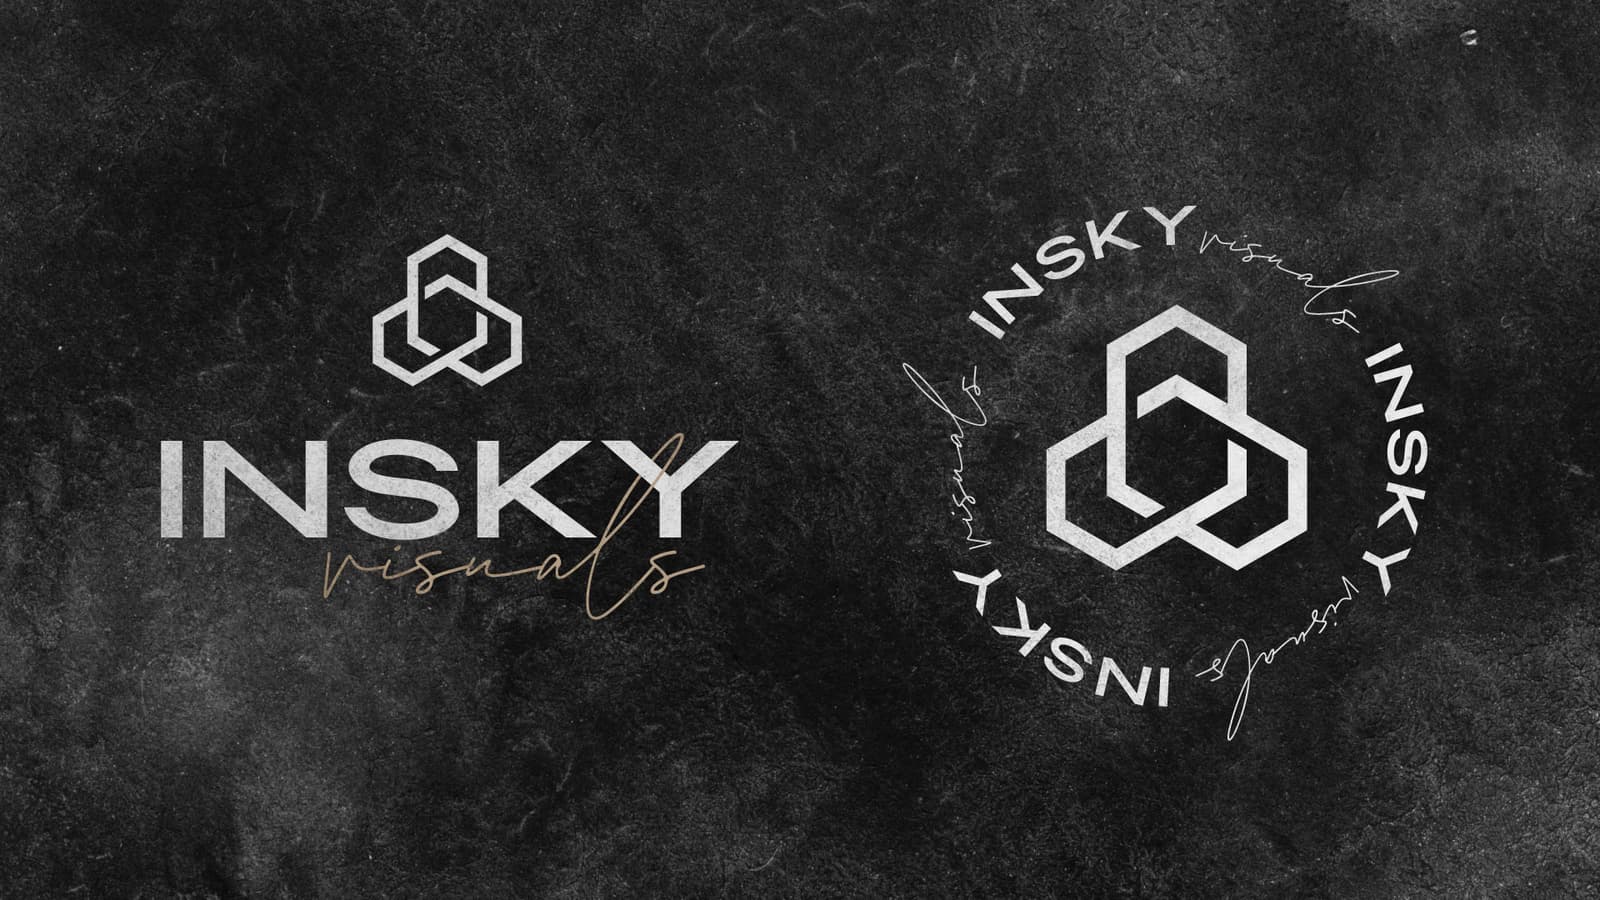 Insky Logo & alternative icon on a slate background